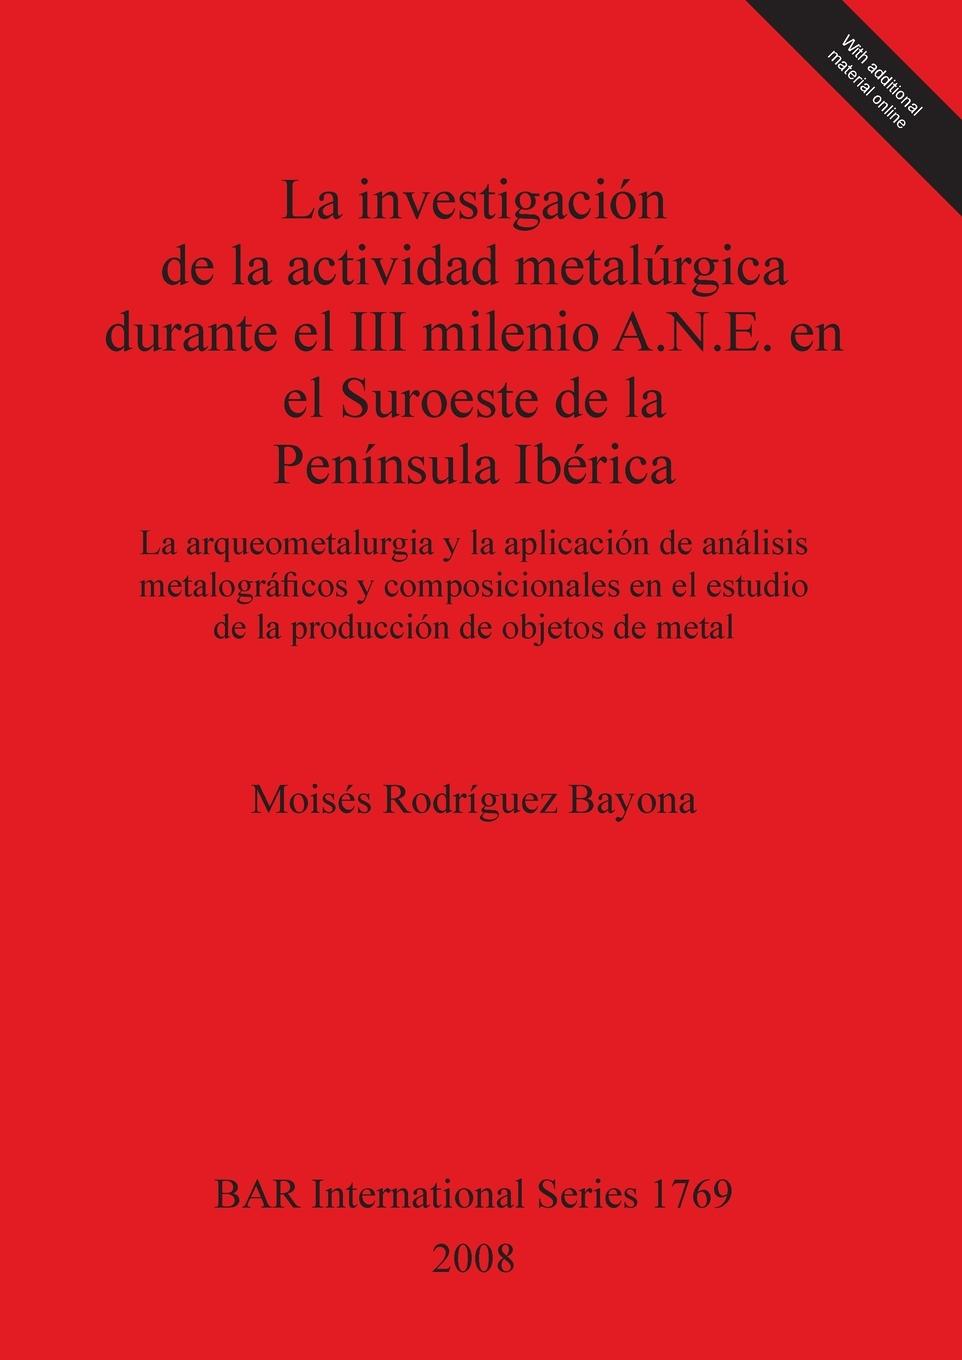 Carte La investigacion de la actividad metalurgica durante el III milenio A.N.E. en el Suroeste de la Peninsula Iberica Moises Rodriguez Bayona